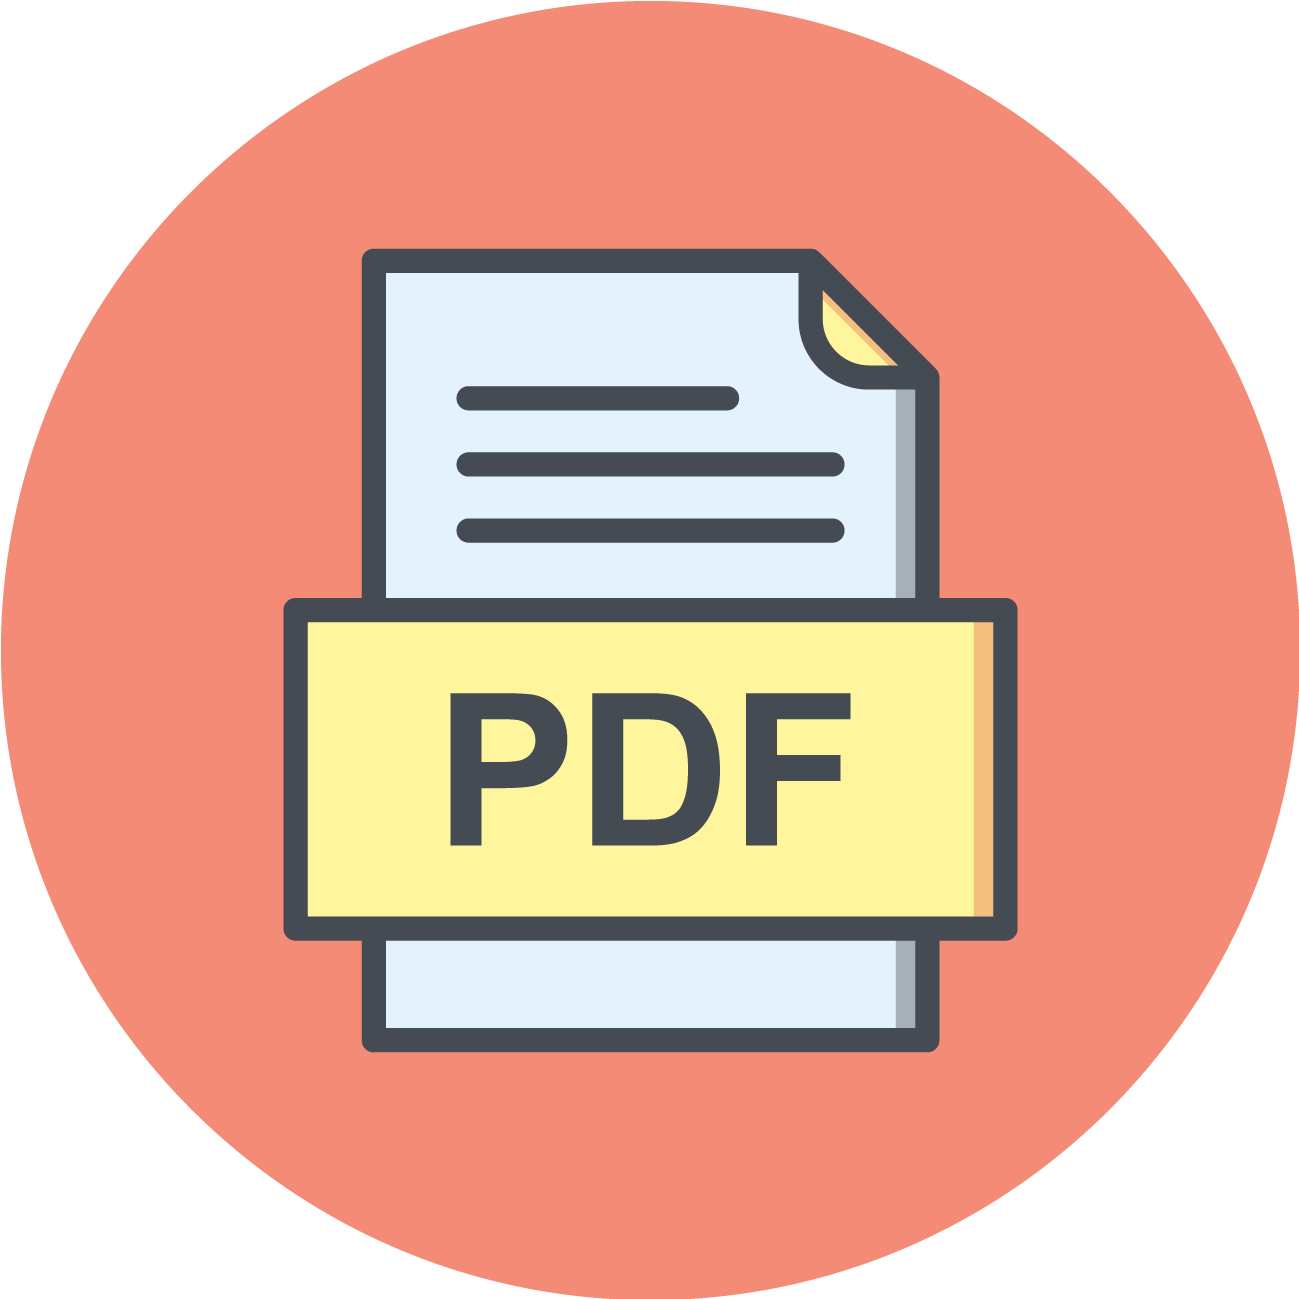 نشان دادن فایل های pdf در برنامه نویسی اندروید با استفاده از کتابخانه PdfView